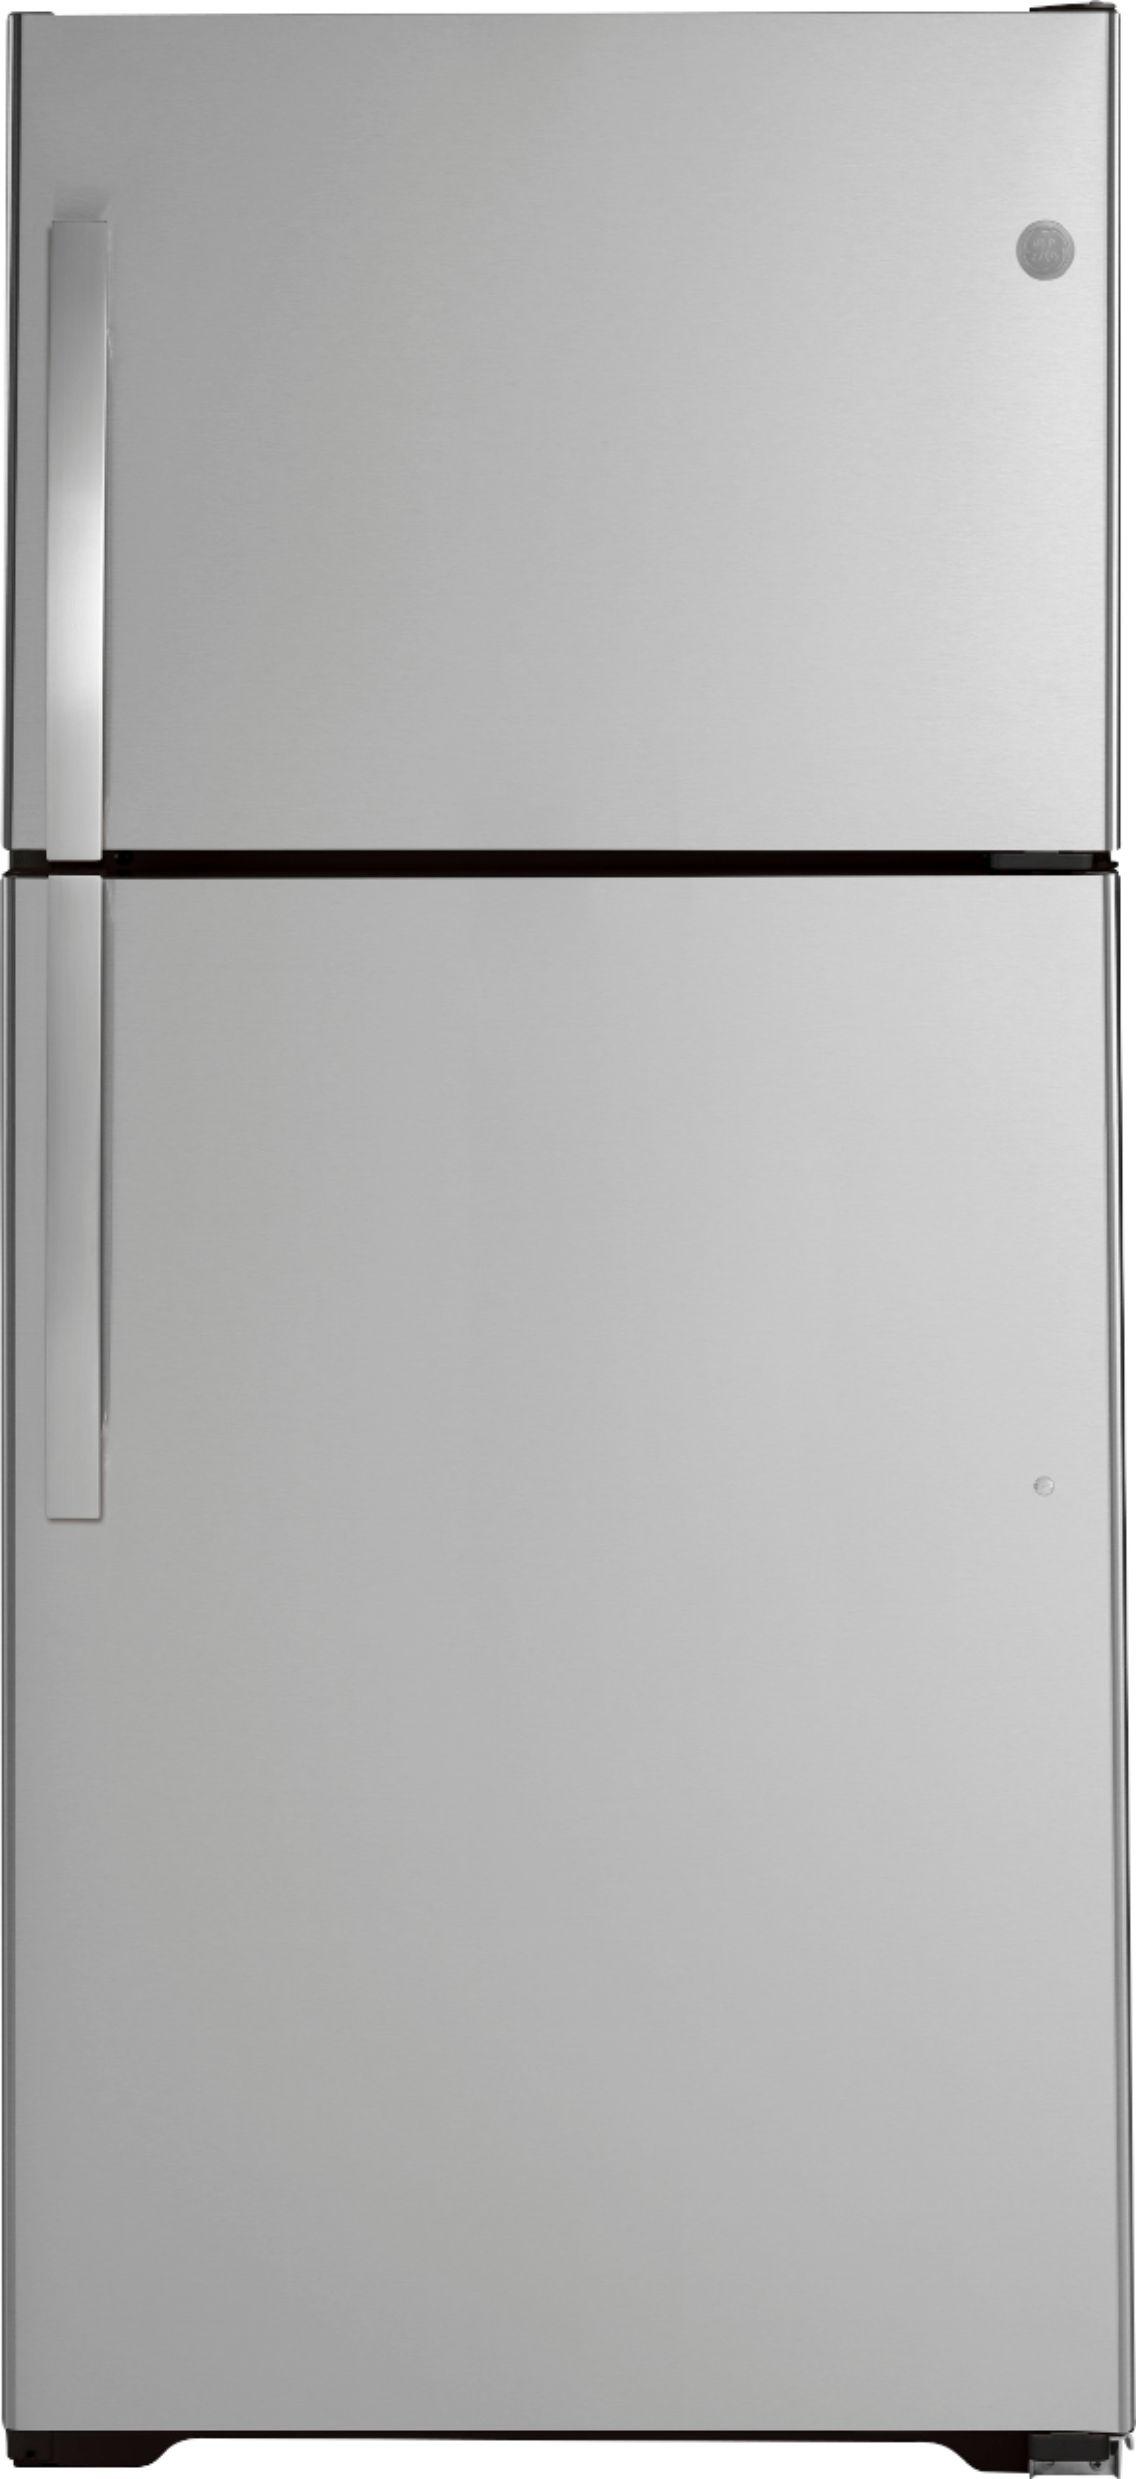 The Best Top-Freezer Refrigerators of 2022 